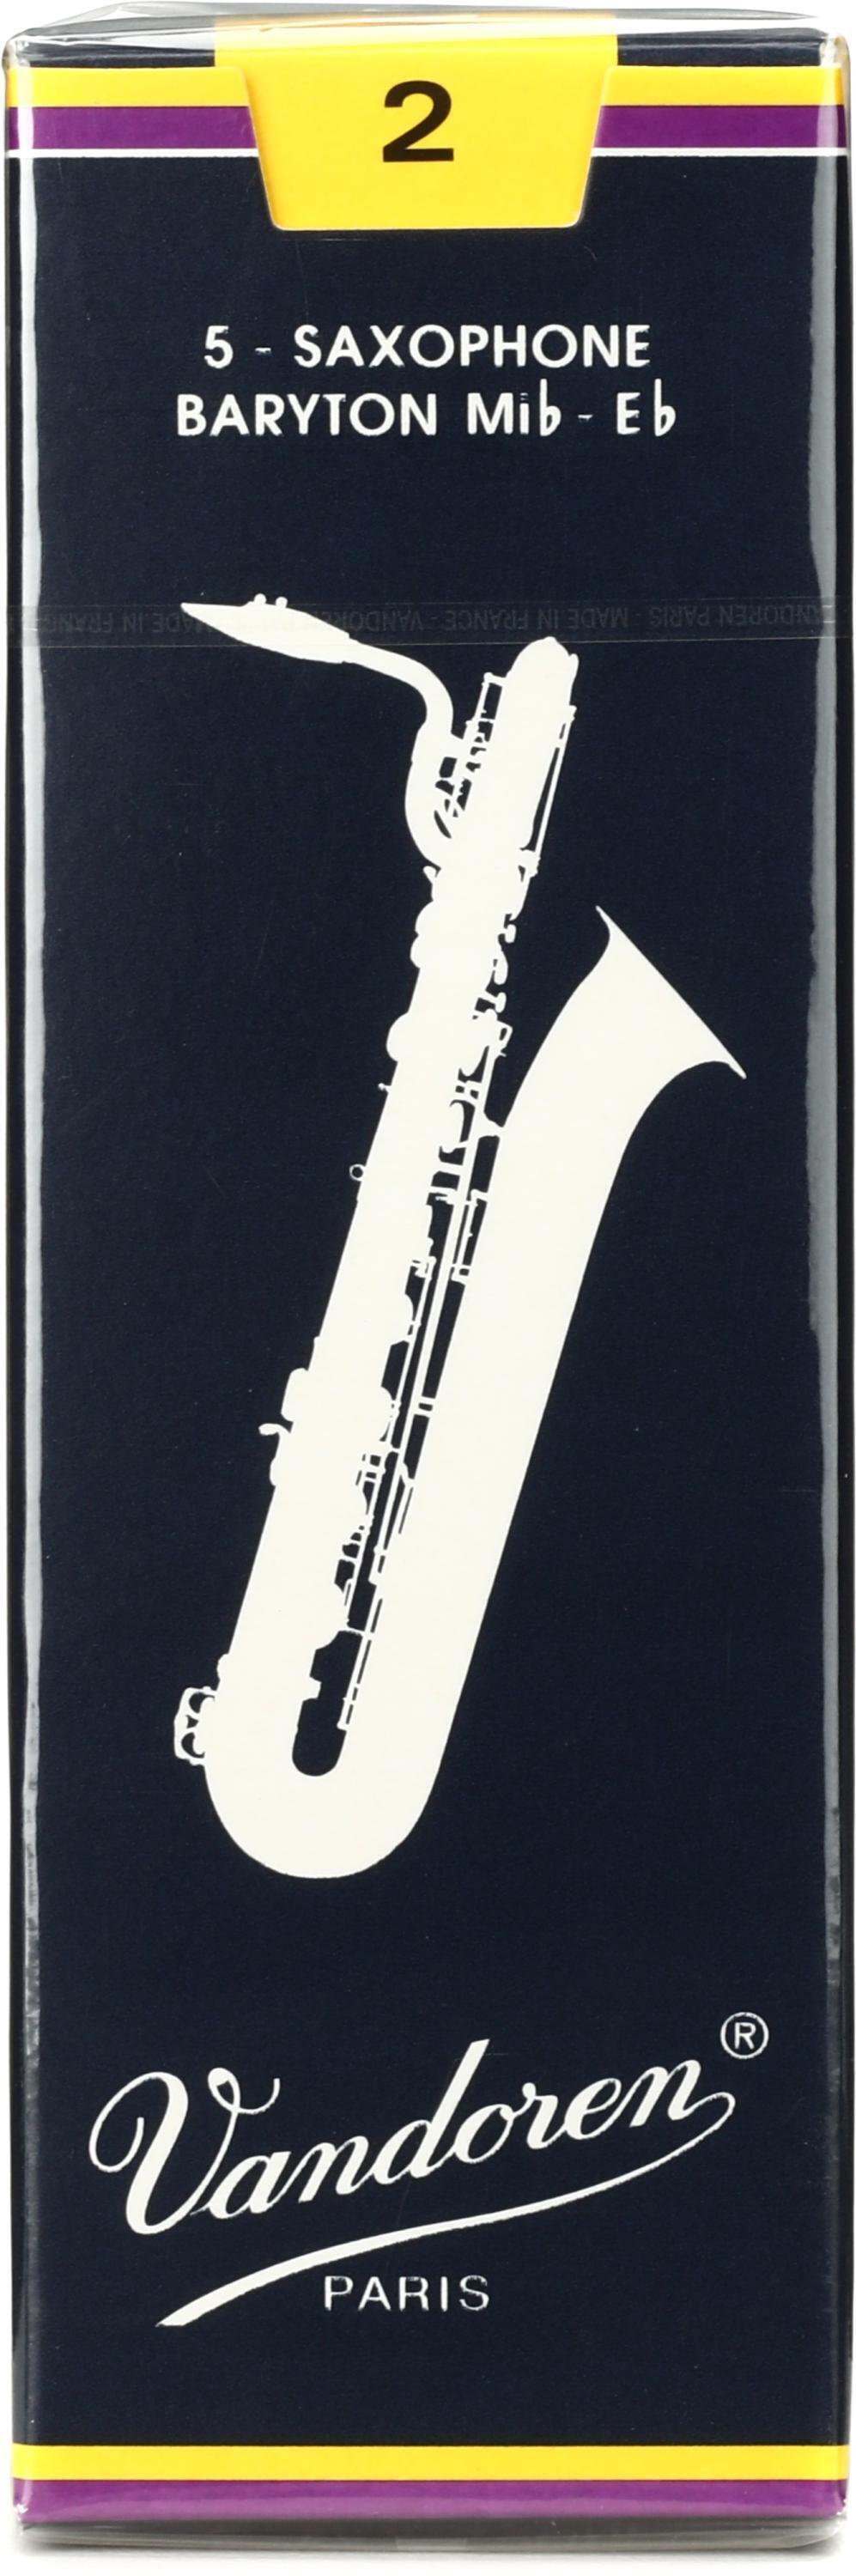 Vandoren 5 Baritone Saxophone #2 Reeds